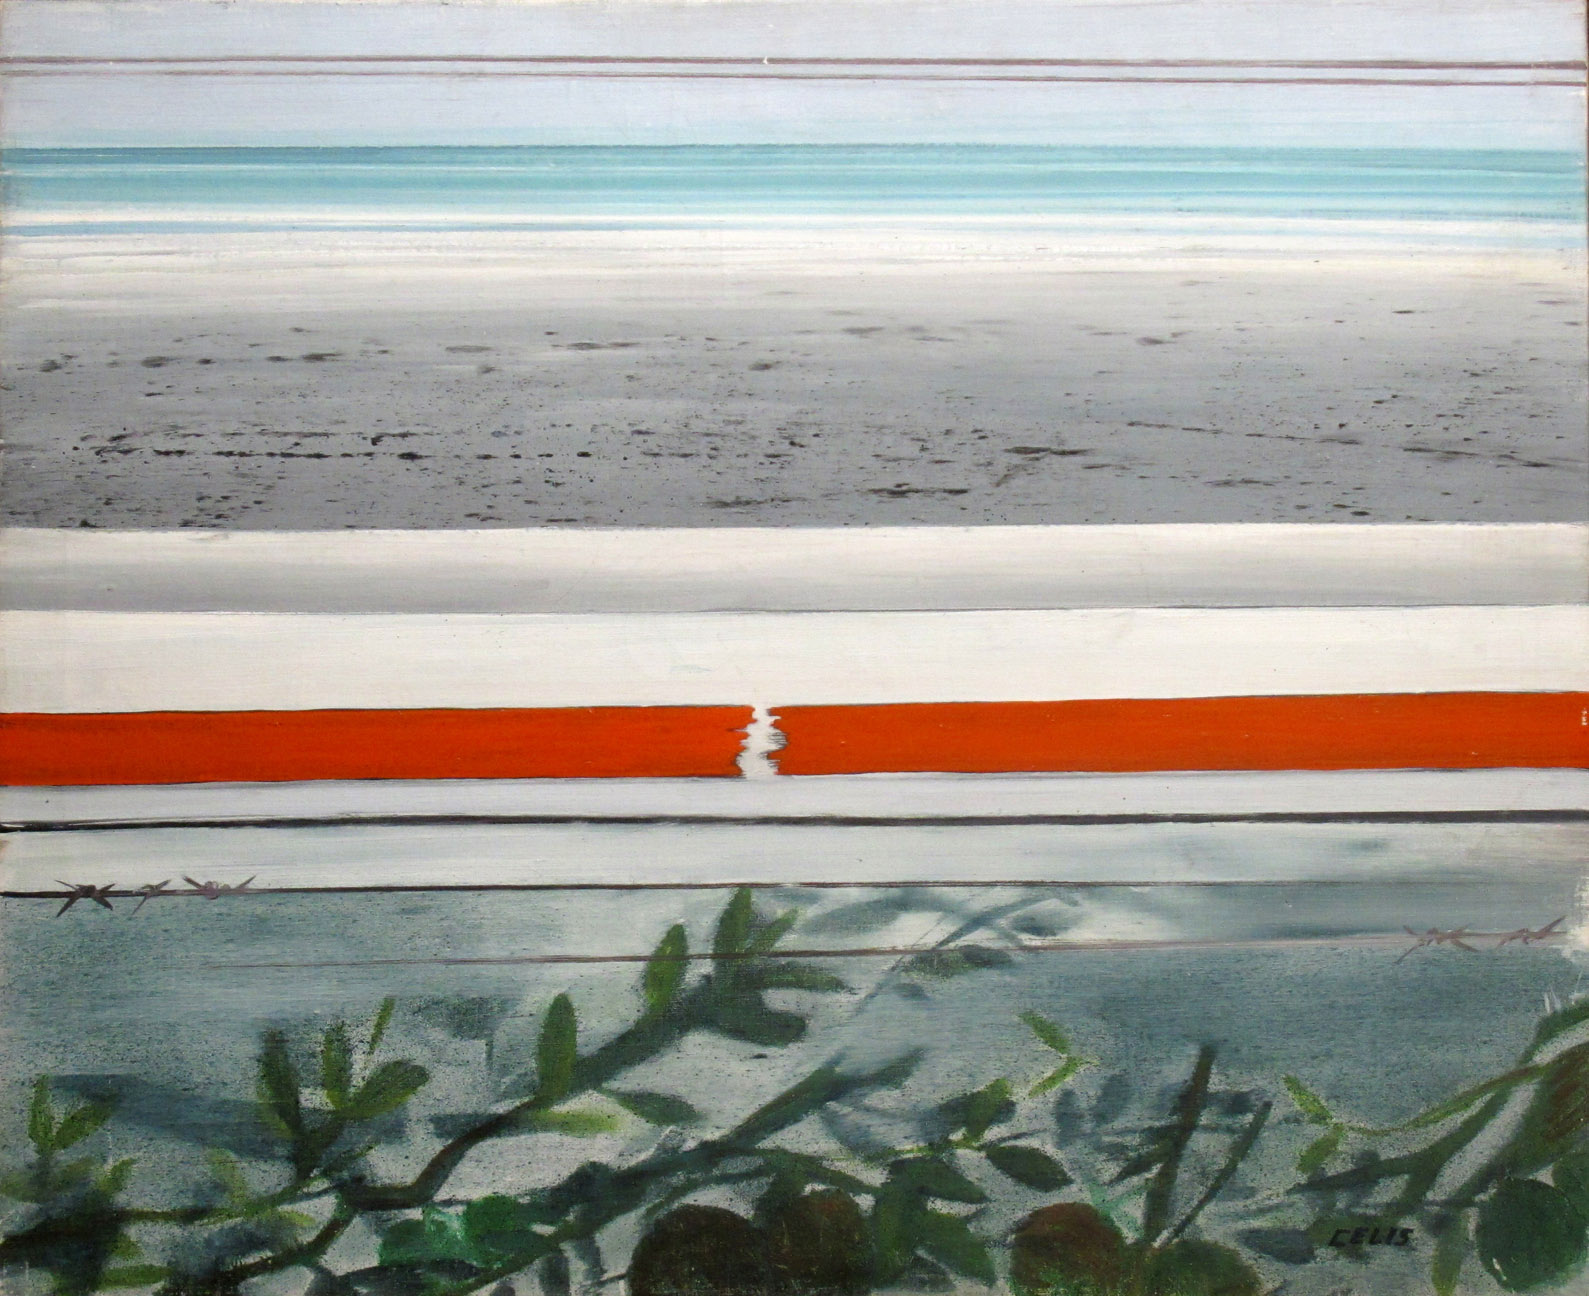 <p><em>Frente al mar remoto</em>, 1967. Óleo sobre lienzo. </p>
<p> </p>